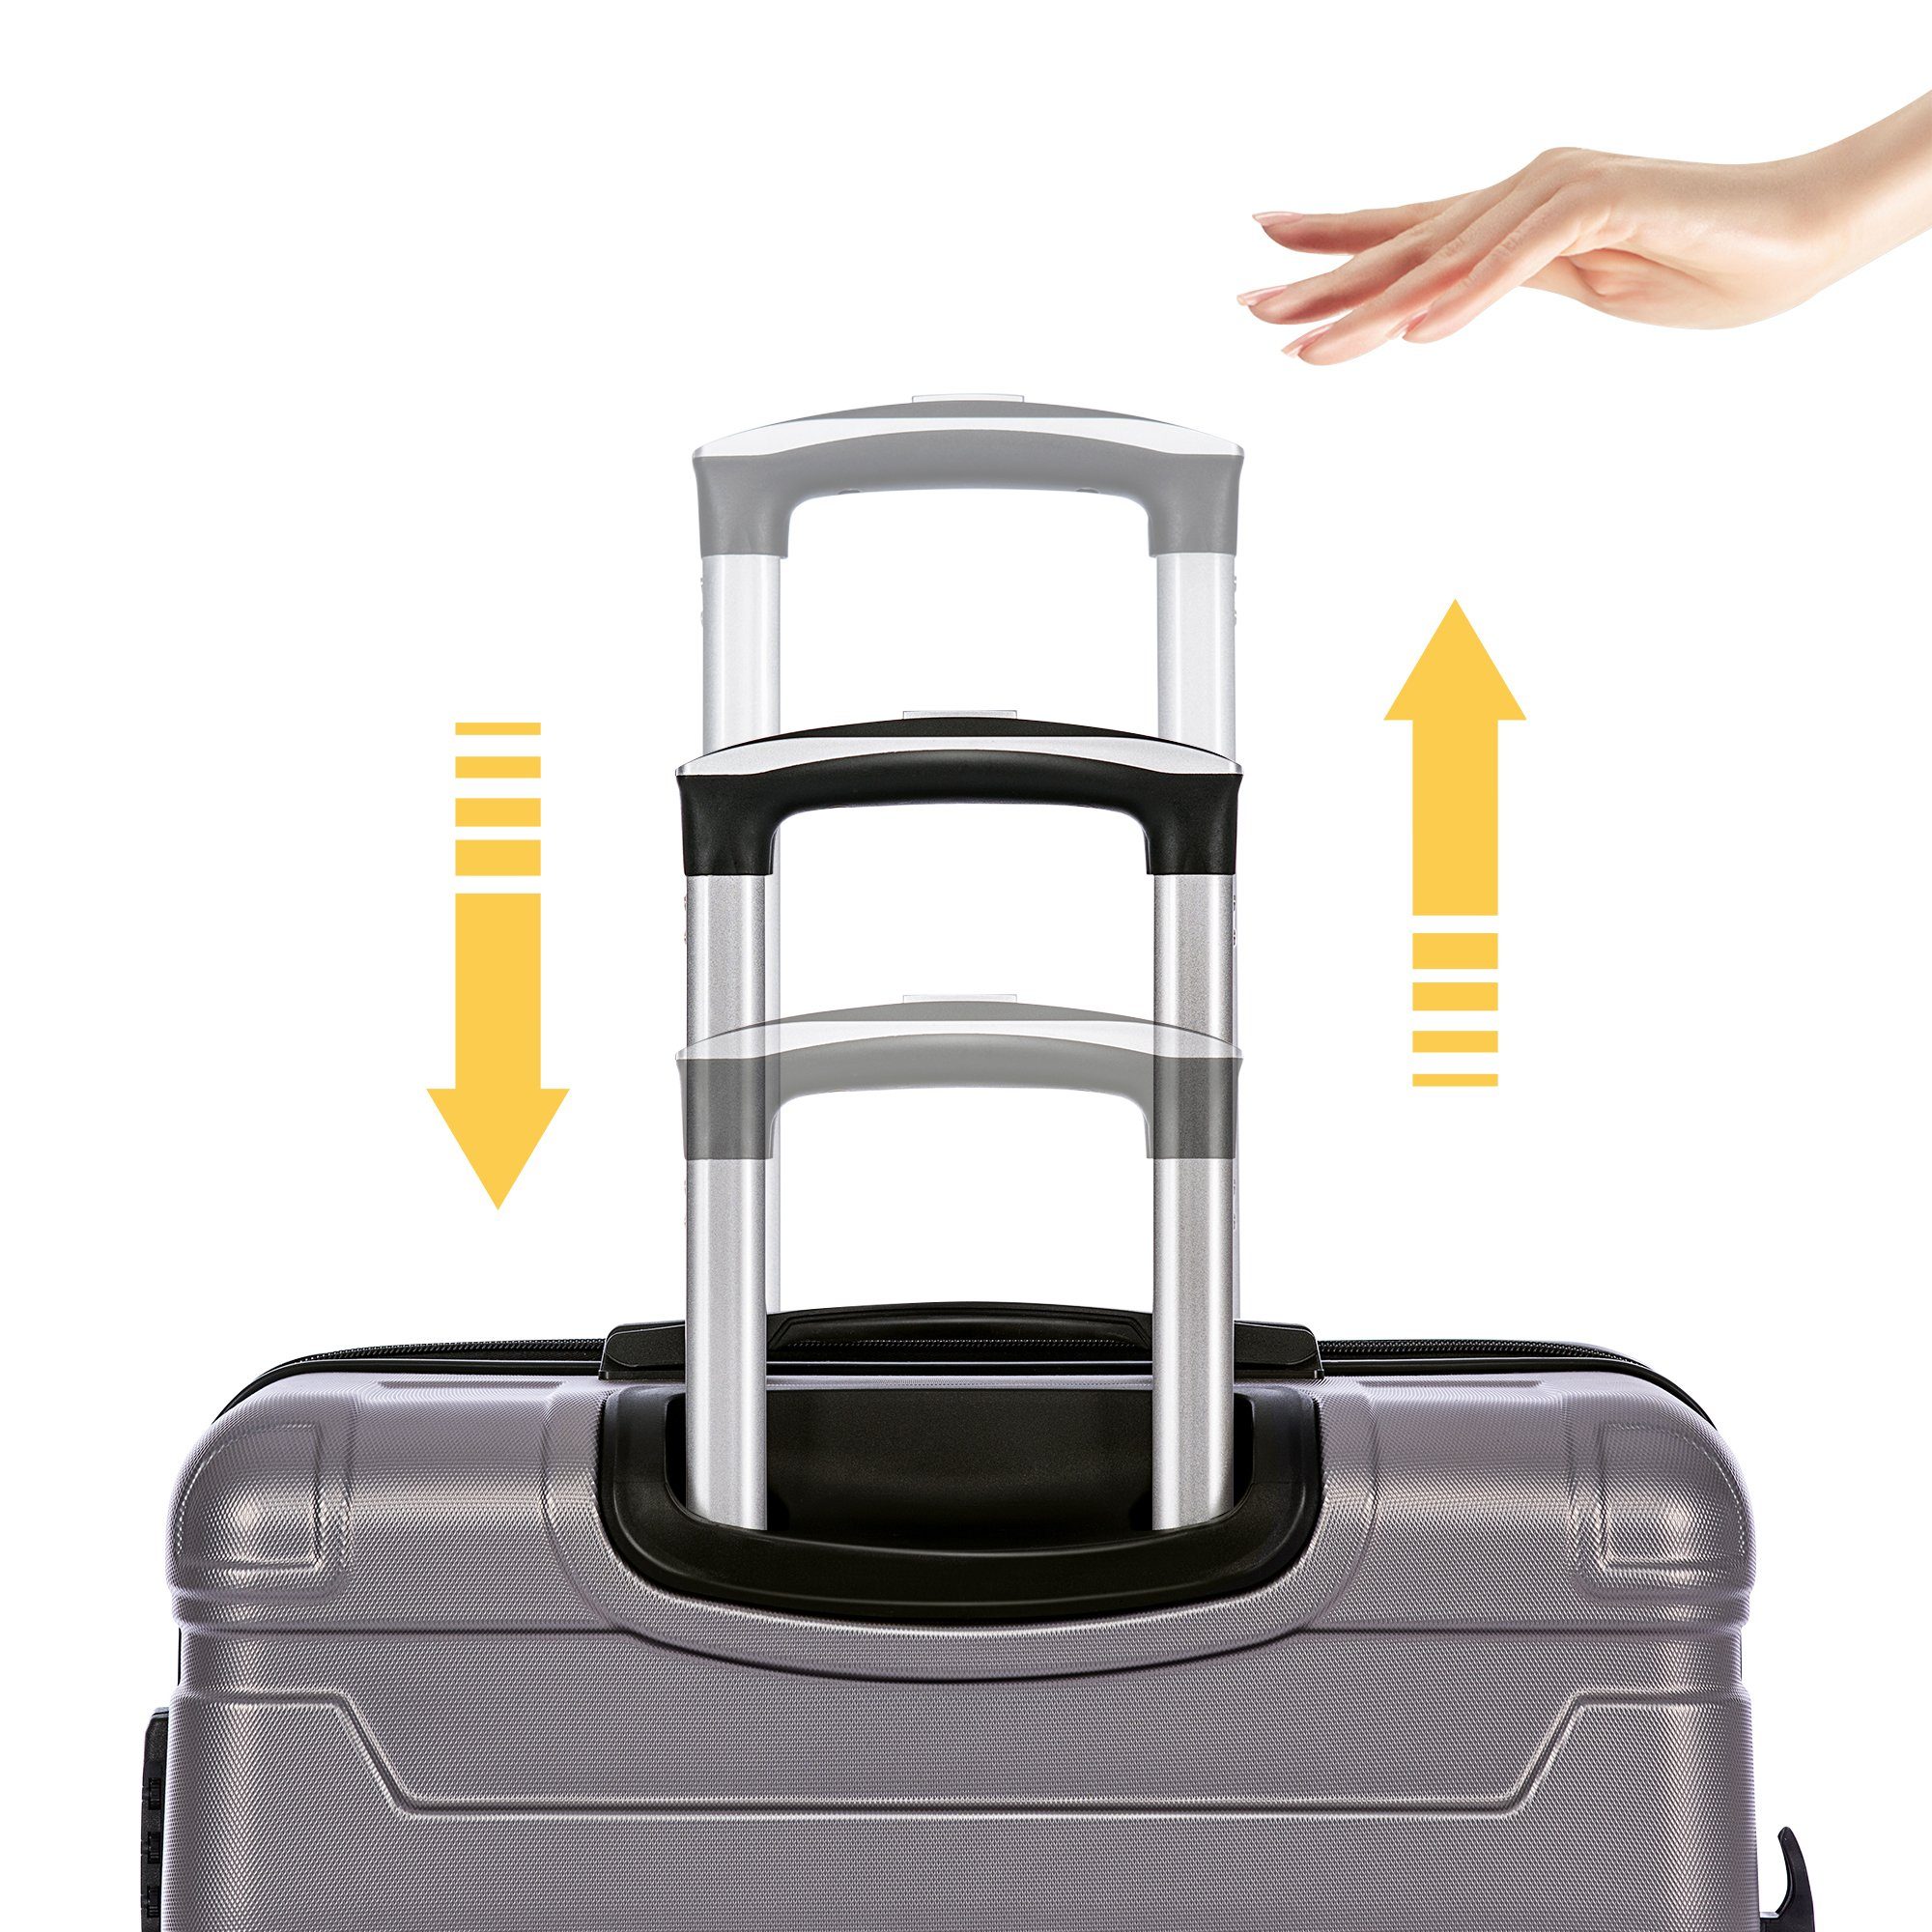 Koffer B-DJ-PP294405BAA, Handgepäckkoffer 2 mit TSA-Schloss Universalrad grau SIKAINI Rollen, und